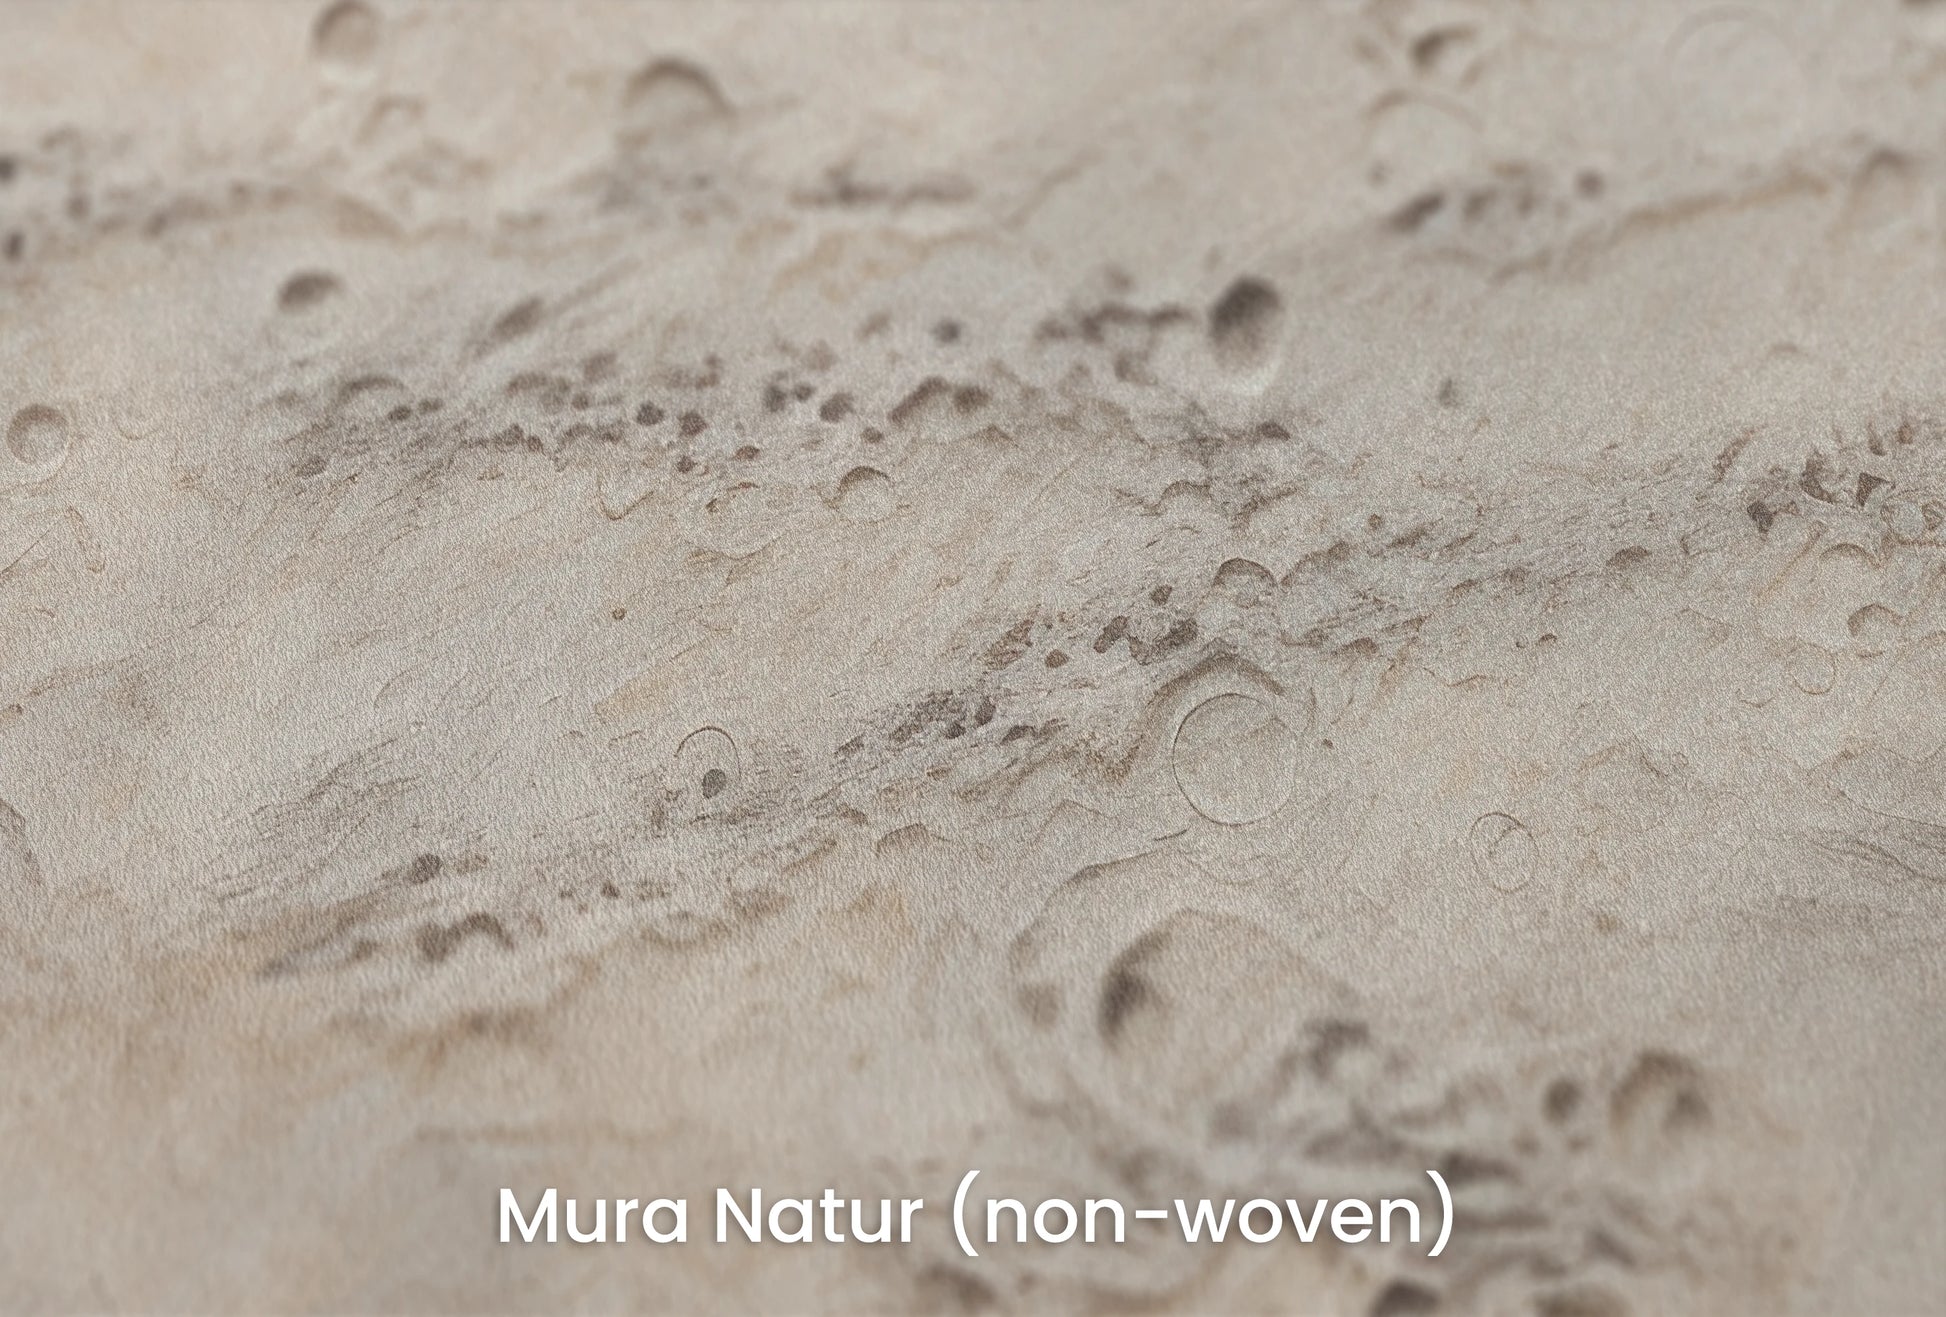 Zbliżenie na artystyczną fototapetę o nazwie Lunar Terrain na podłożu Mura Natur (non-woven) - naturalne i ekologiczne podłoże.